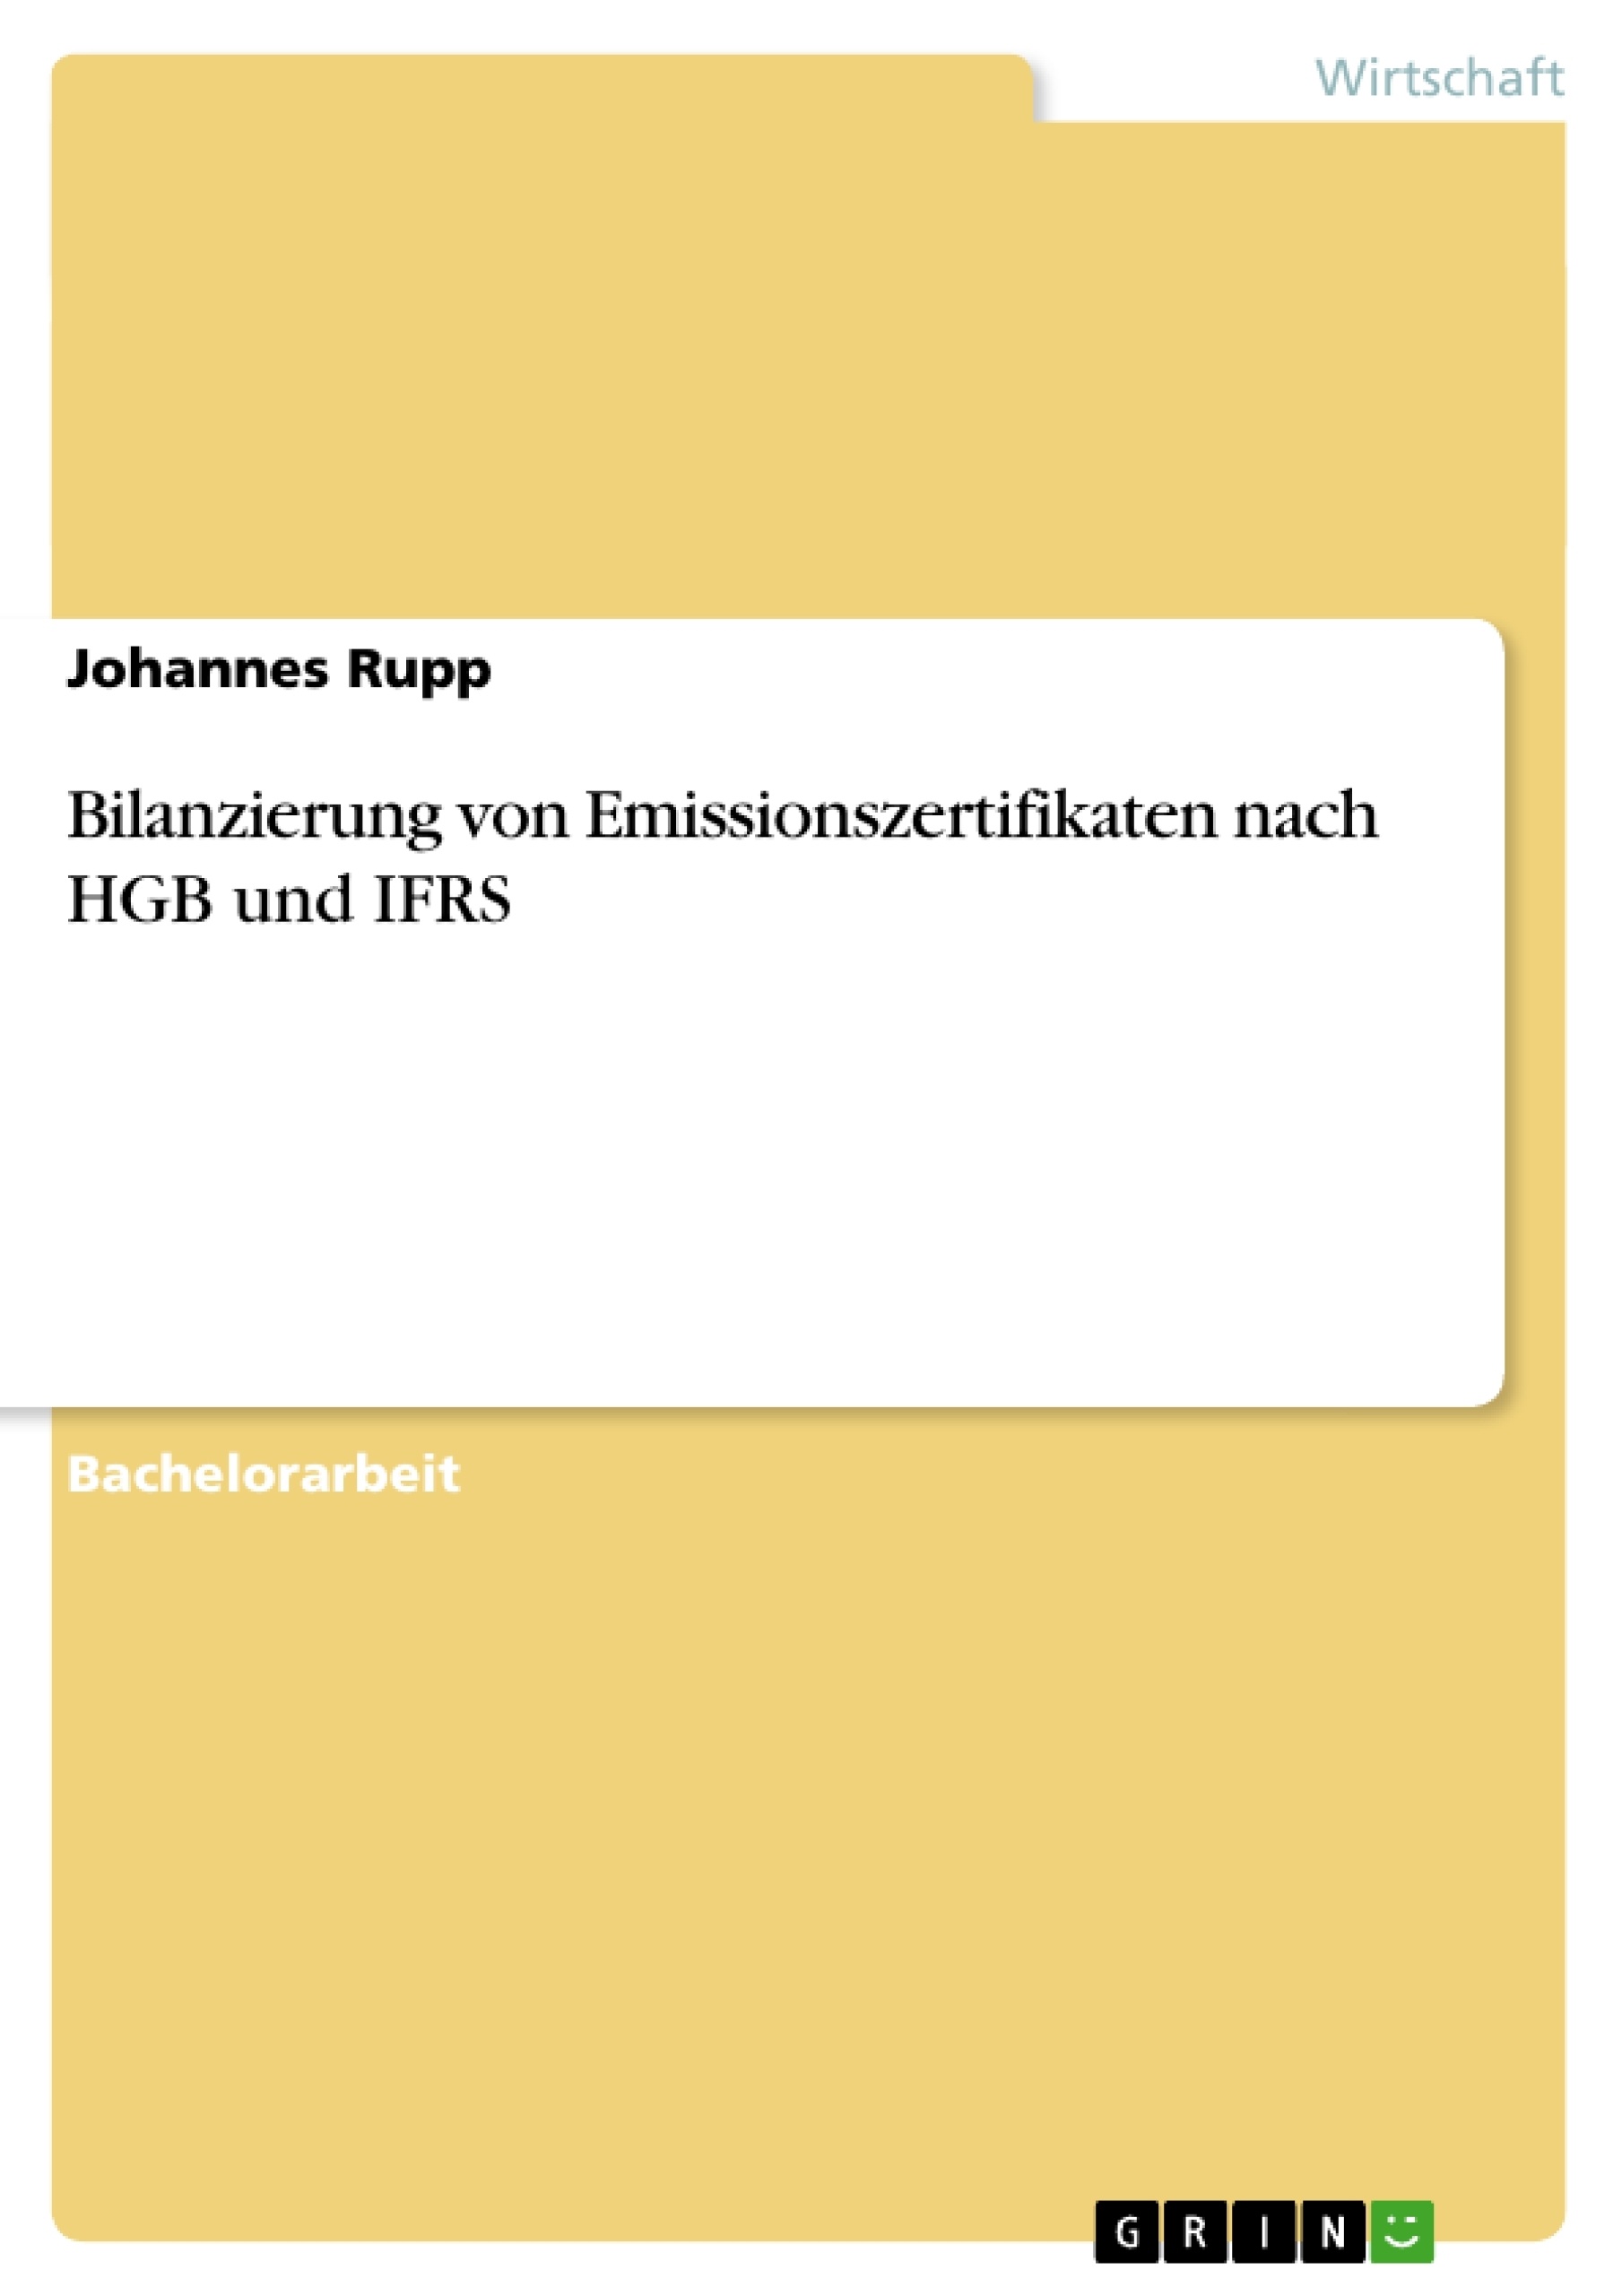 Título: Bilanzierung von Emissionszertifikaten nach HGB und IFRS